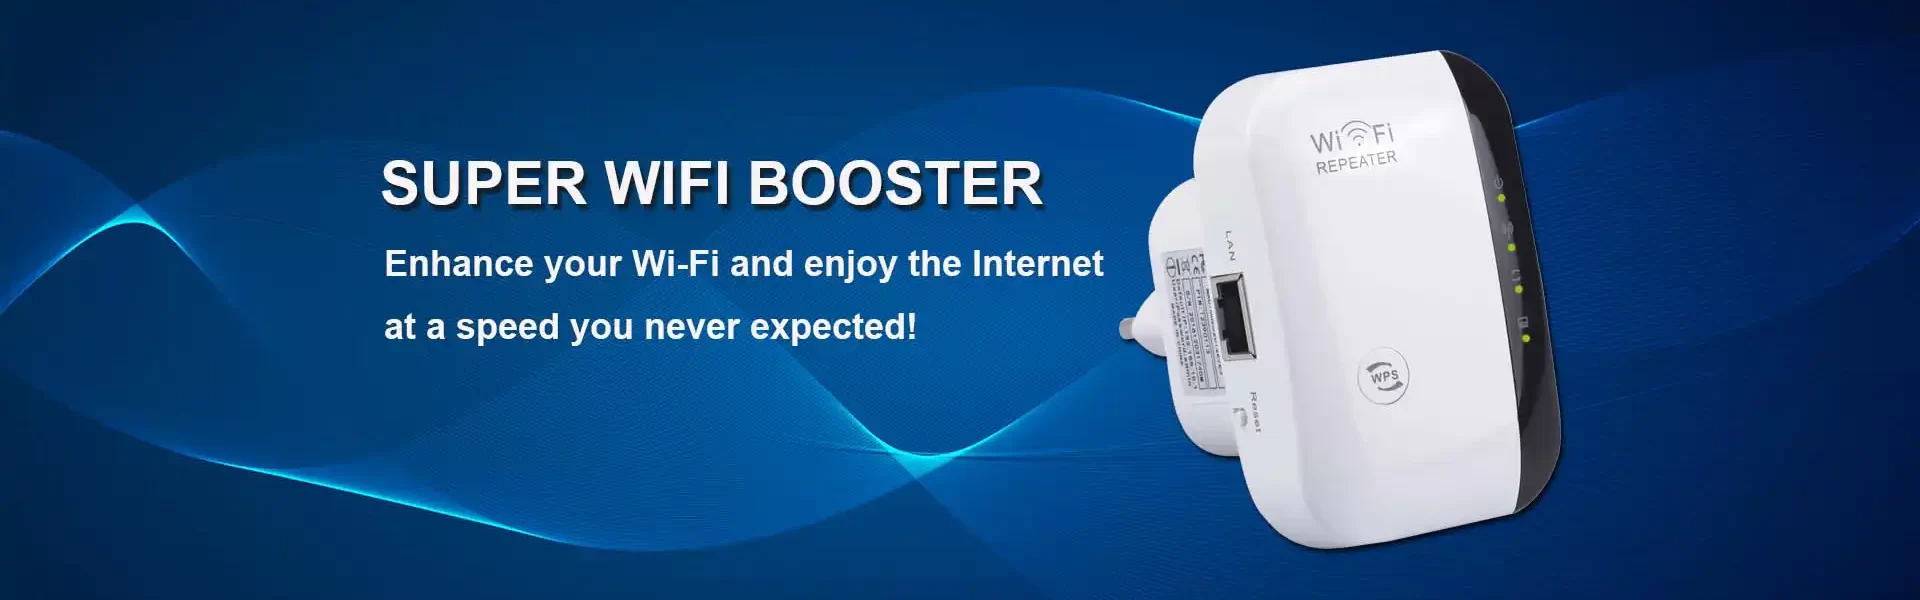 Wi-Fi booster